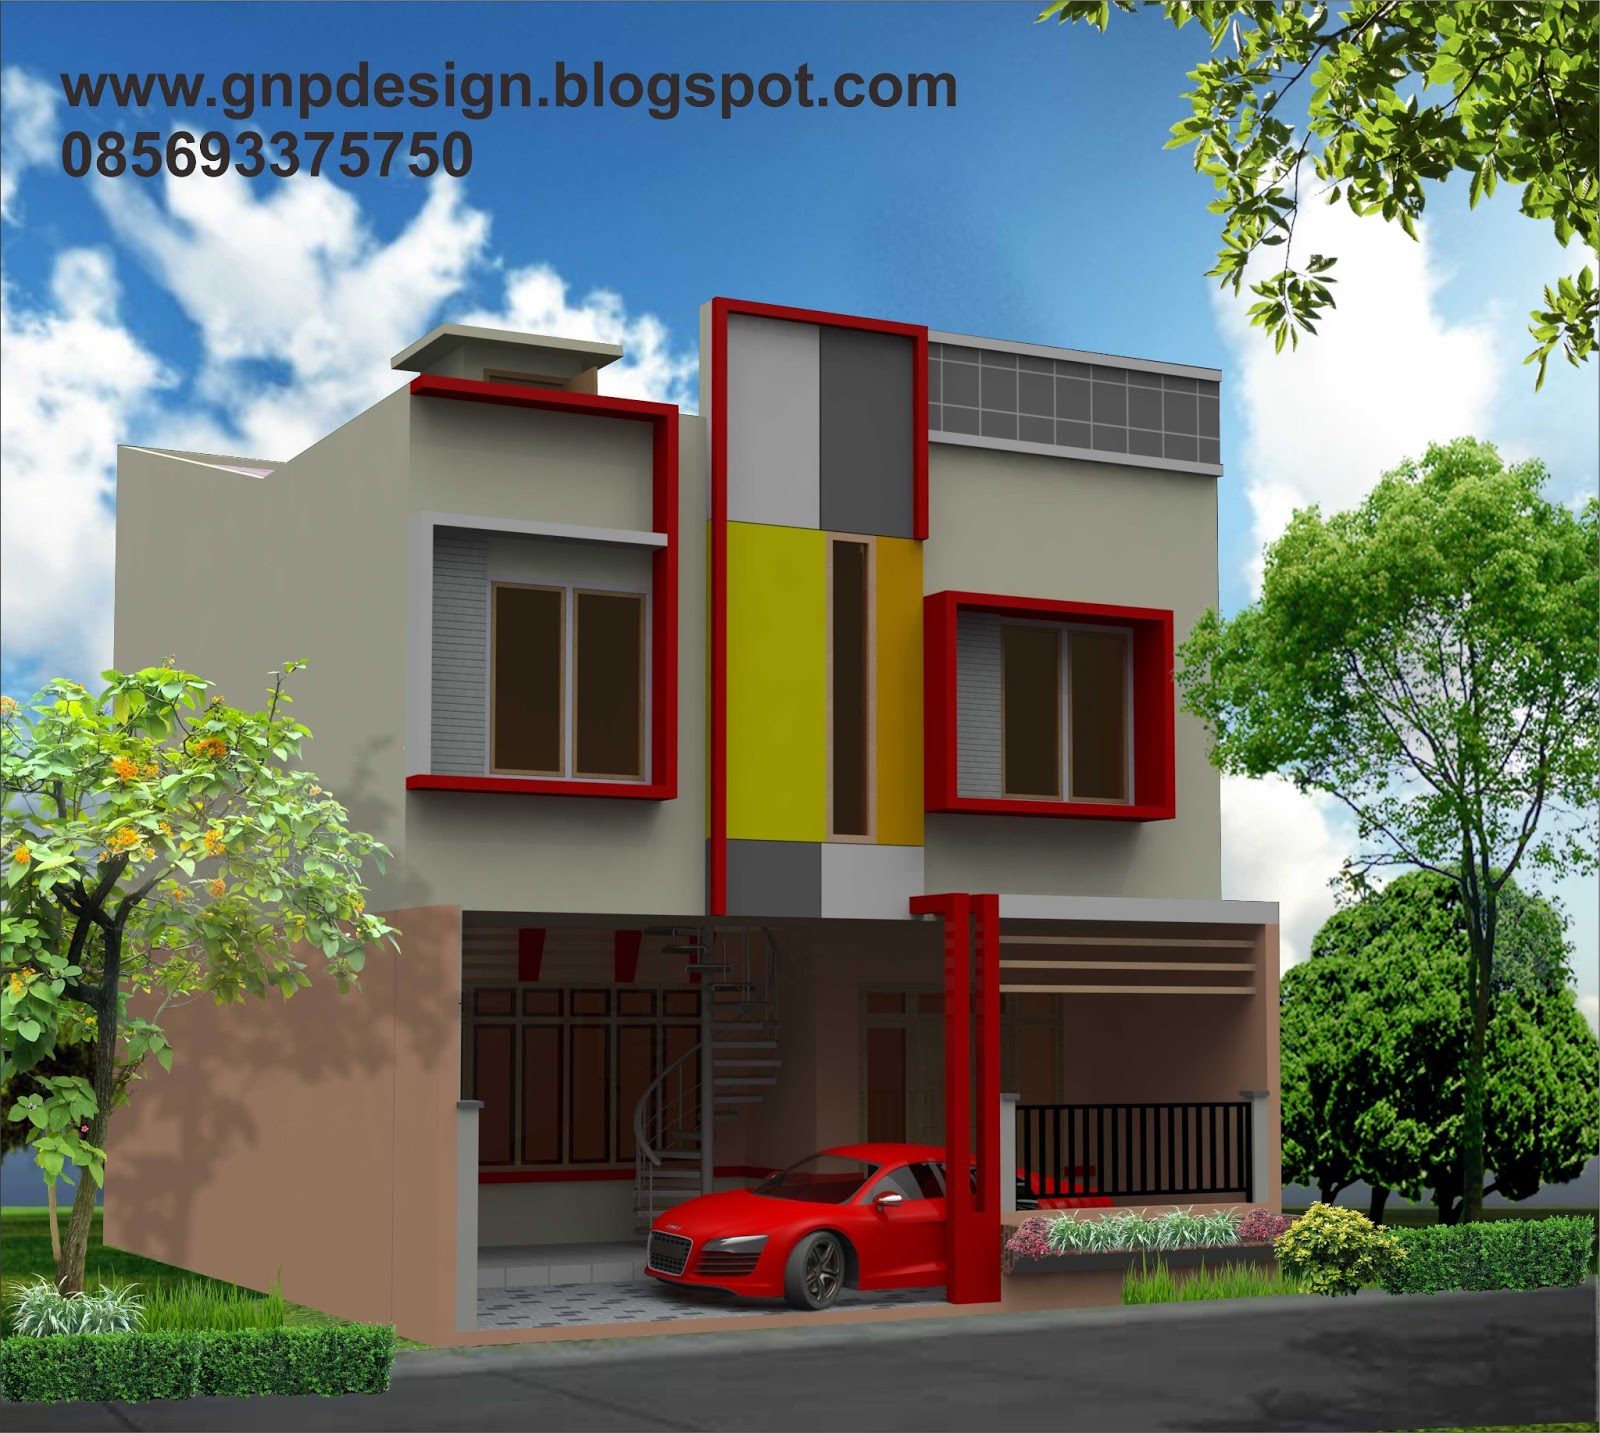 gnp design Design Rumah  Minimalis buat Kontrakan 2  Lantai 